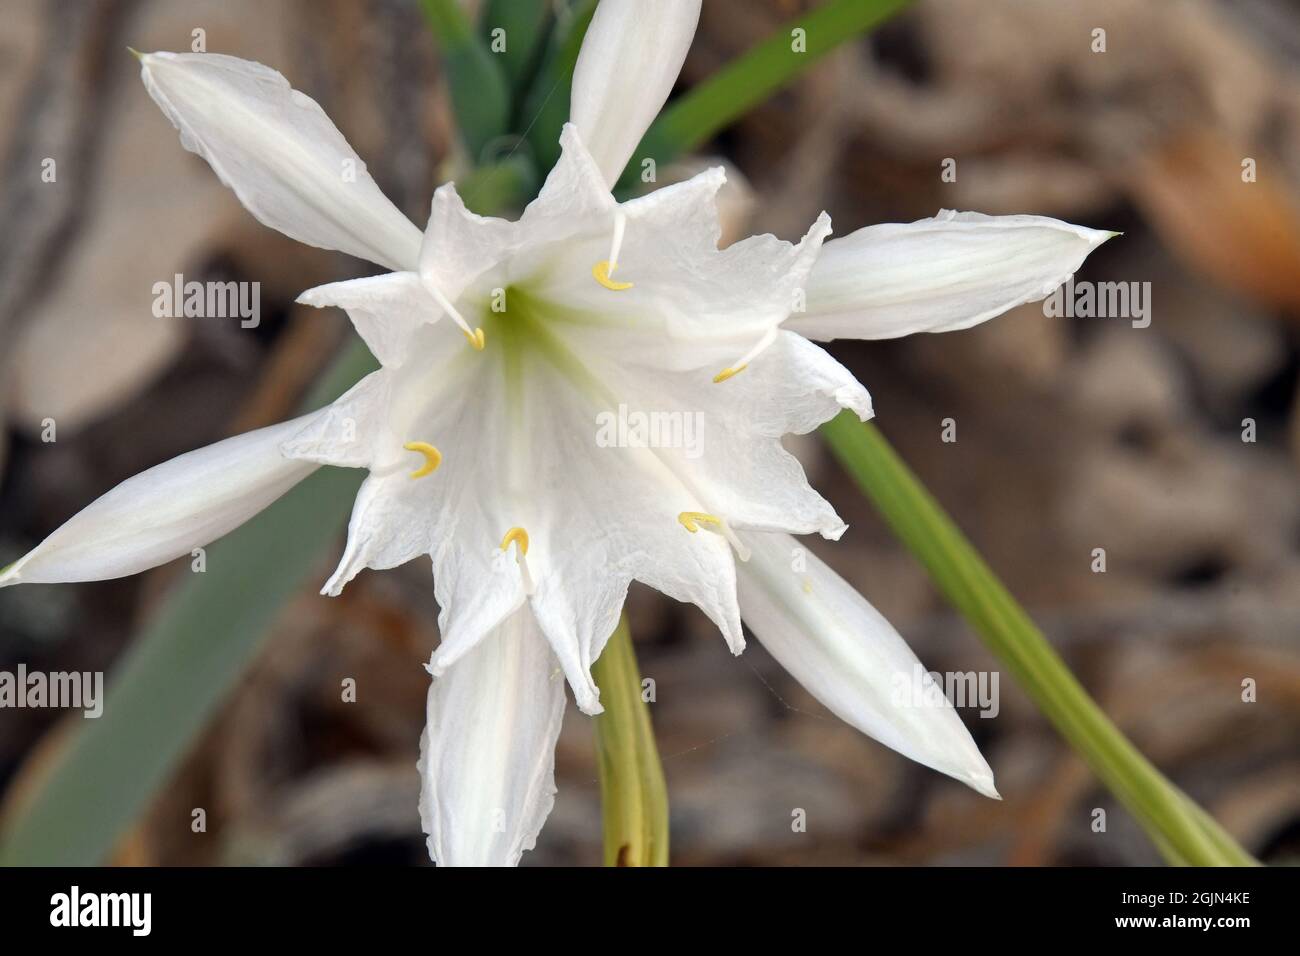 Pancratium maritimum,  sea daffodil blossom. Stock Photo